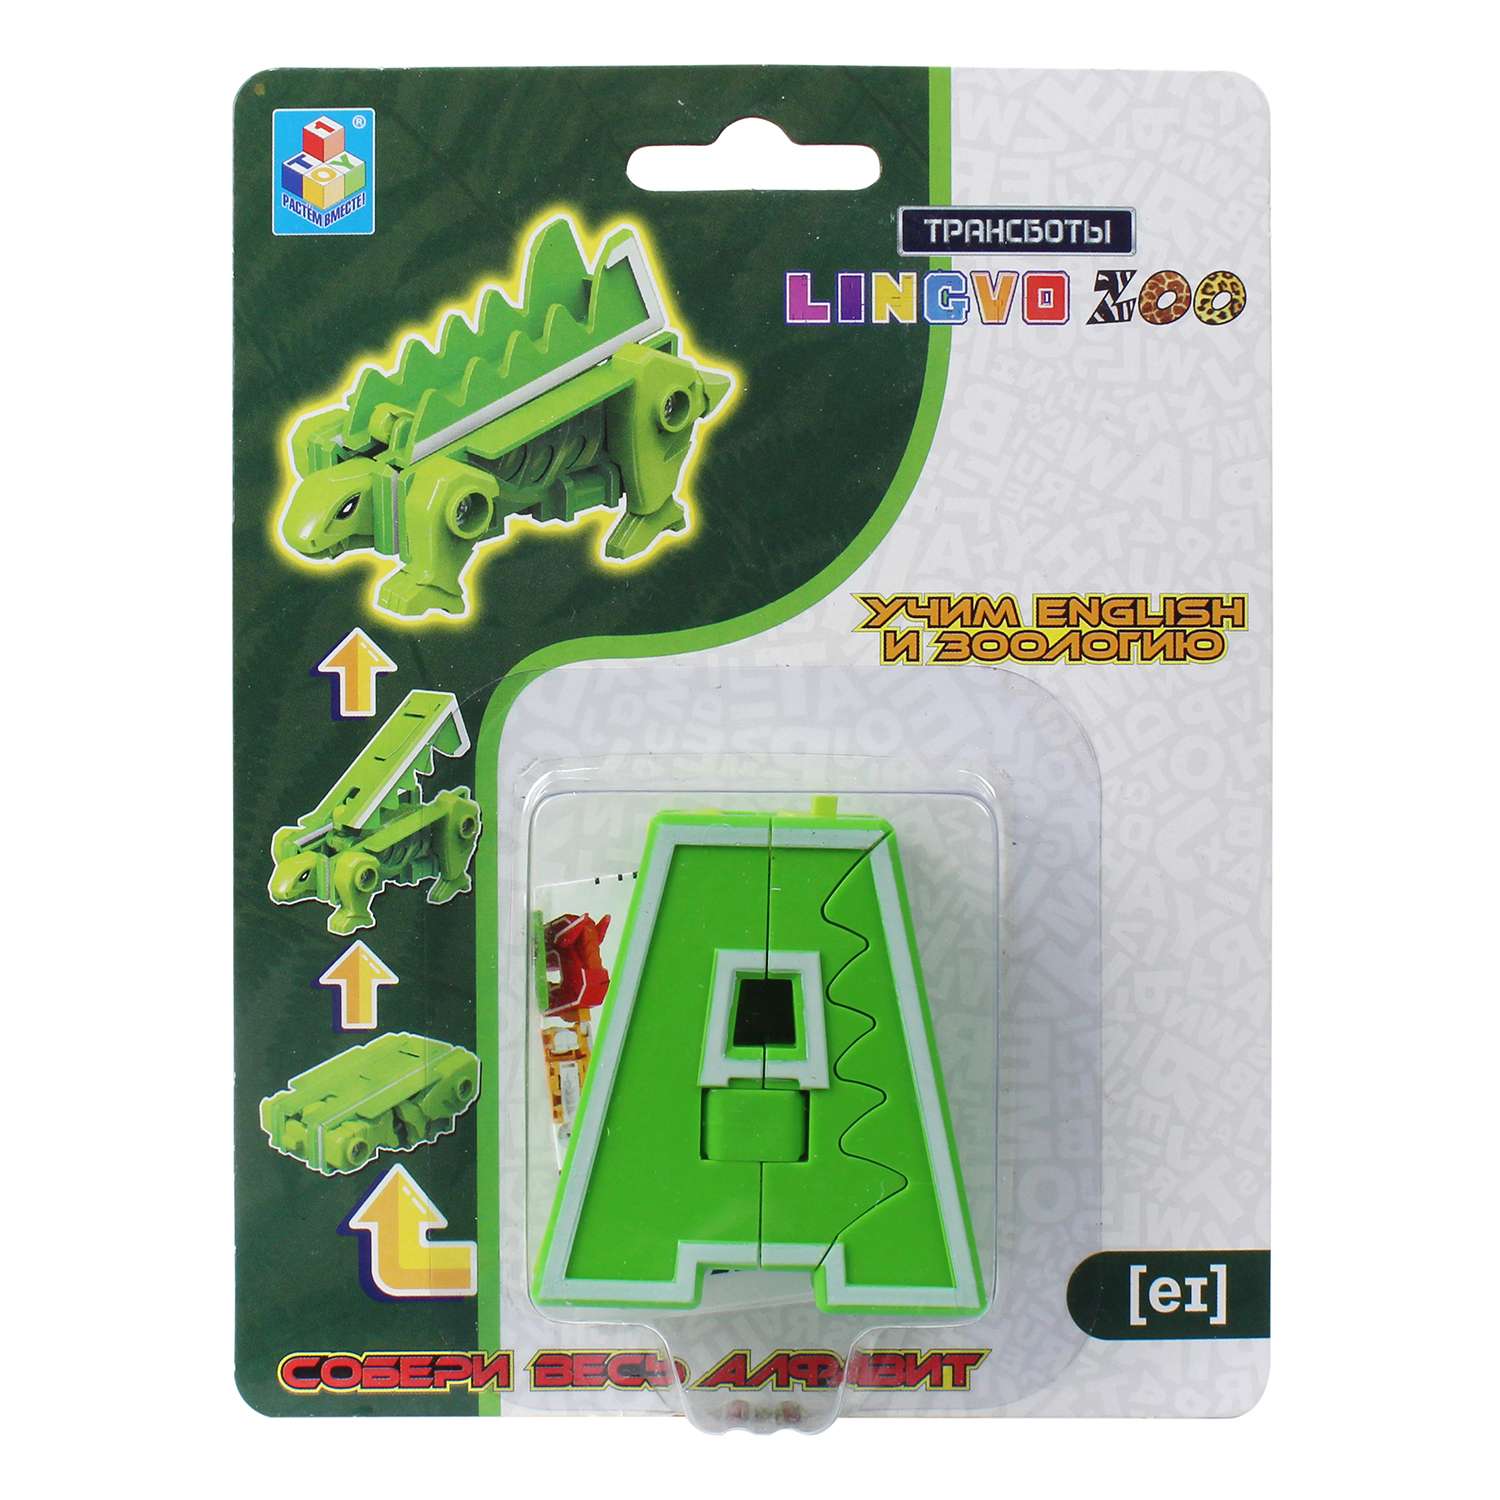 Игрушка 1TOY Трансботы Lingvo Zoo 26 букв от A до Z в ассортименте Т15507 - фото 2